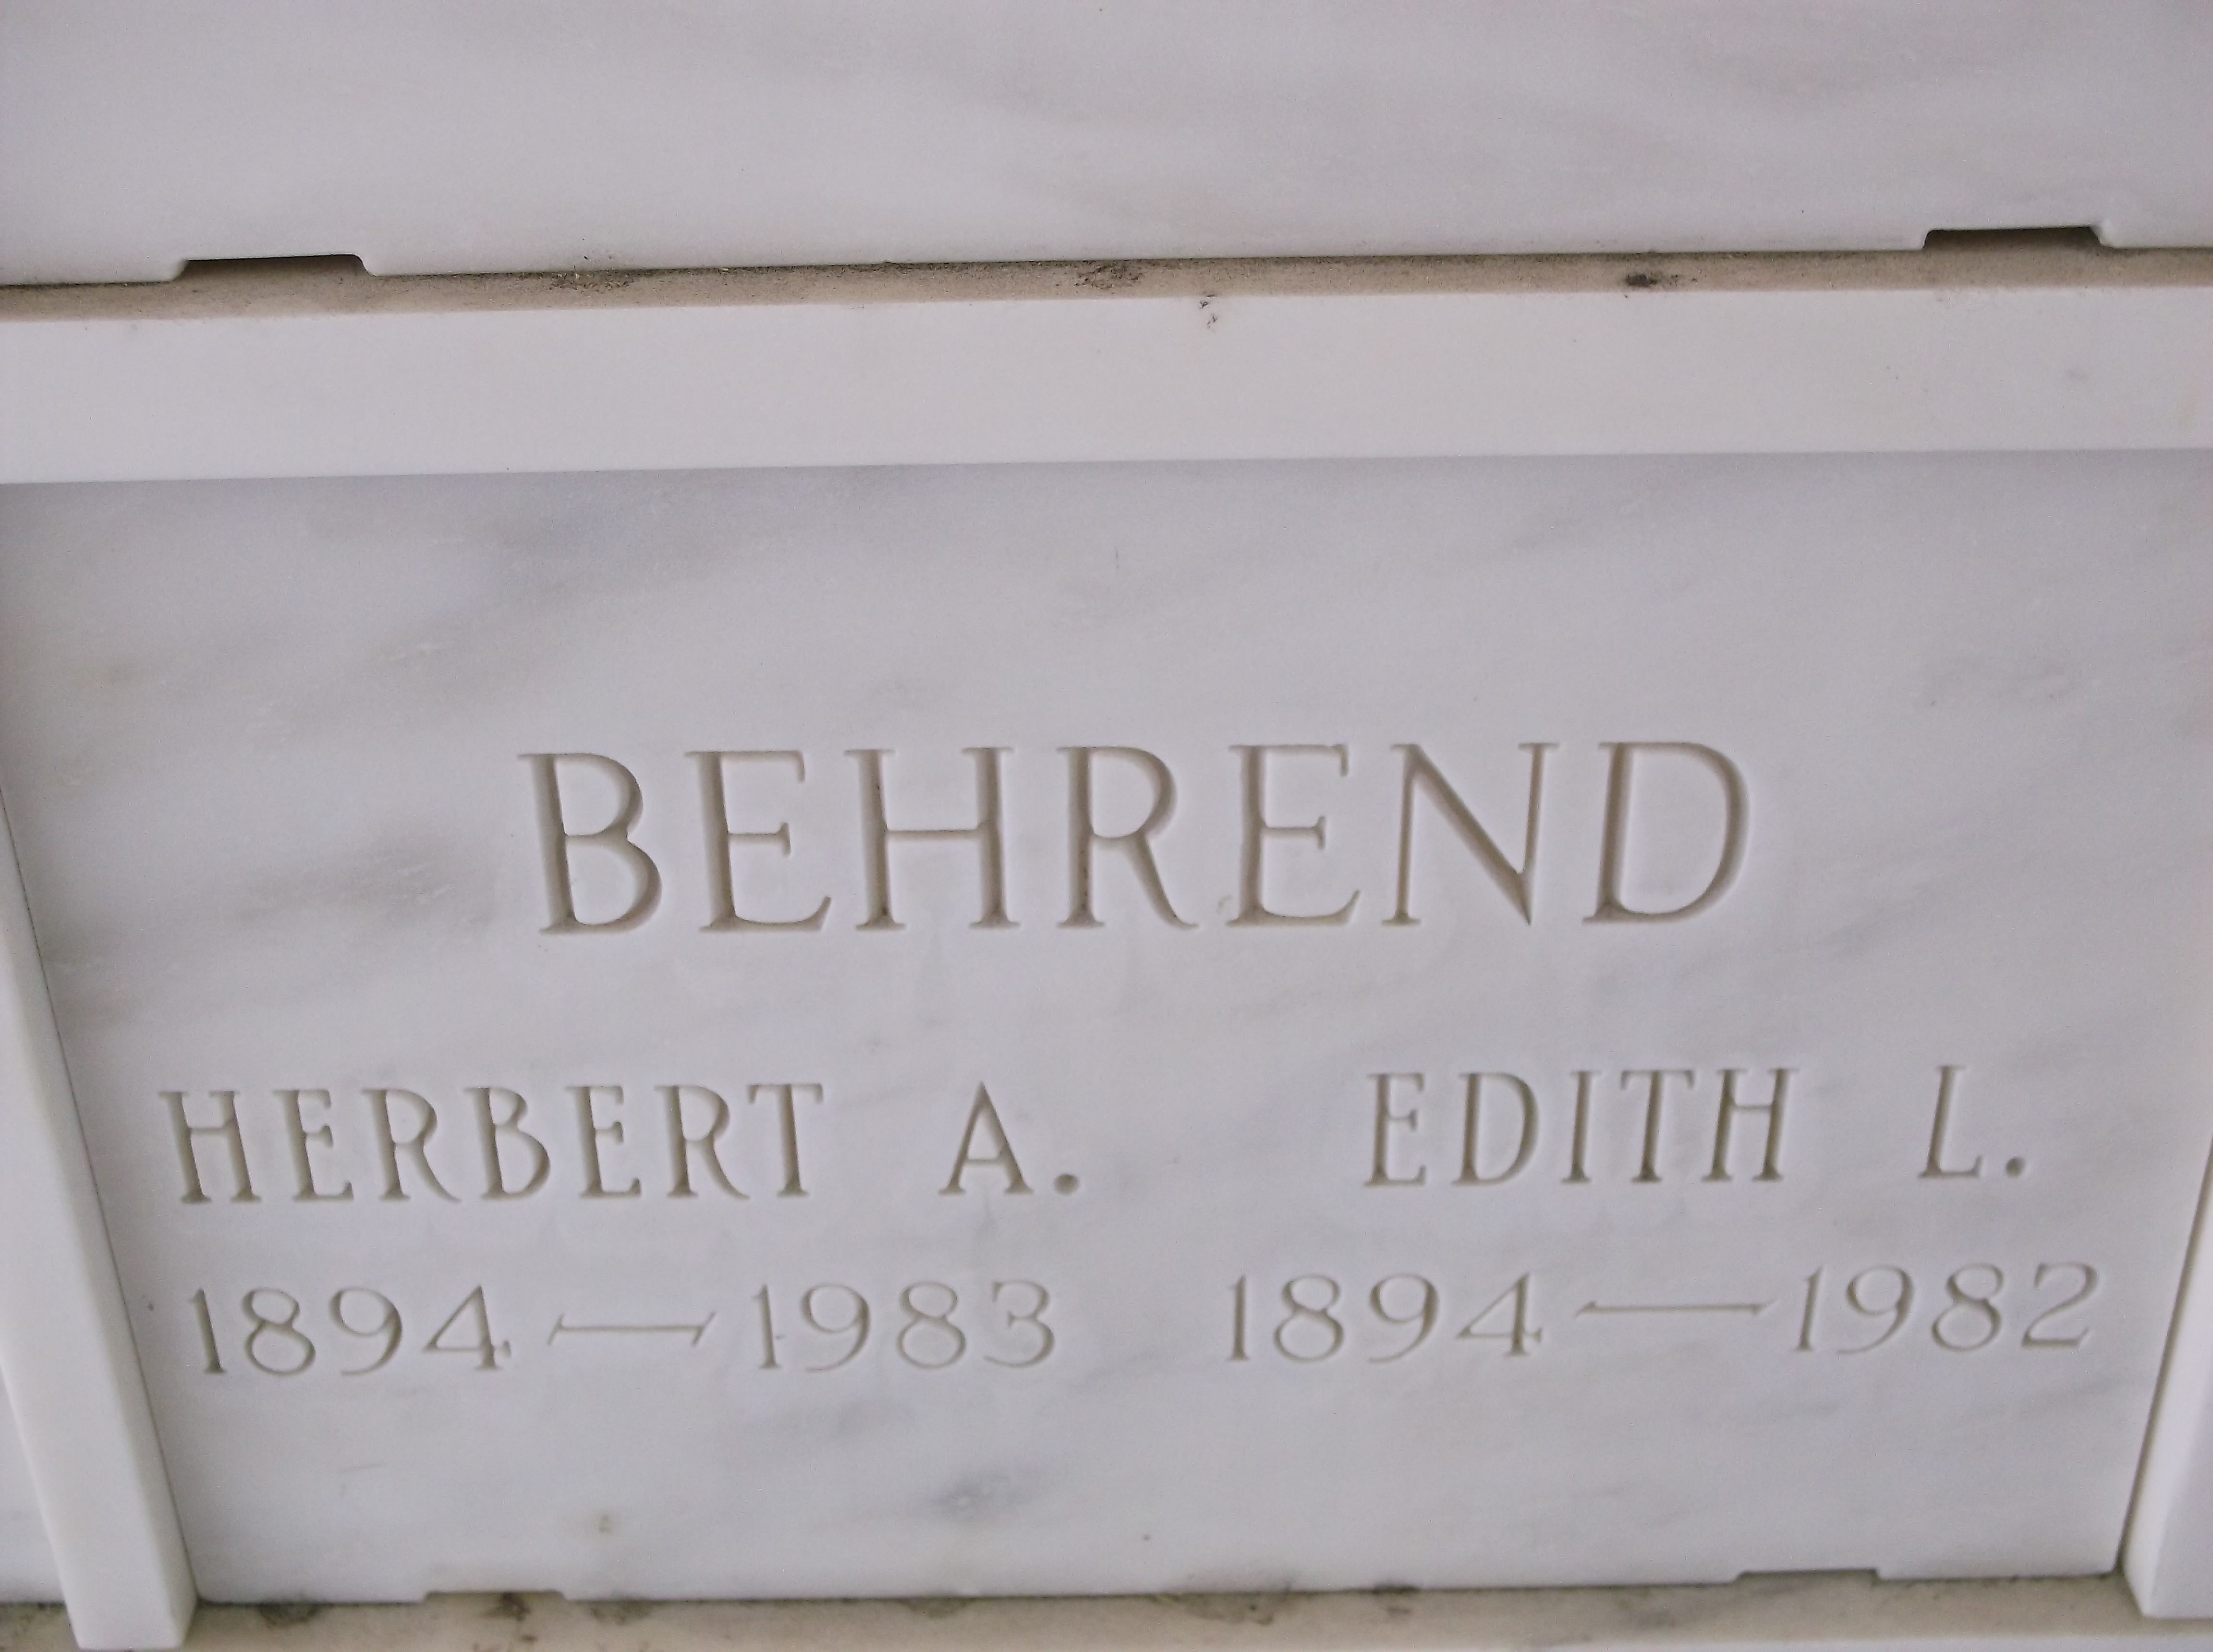 Herbert A Behrend